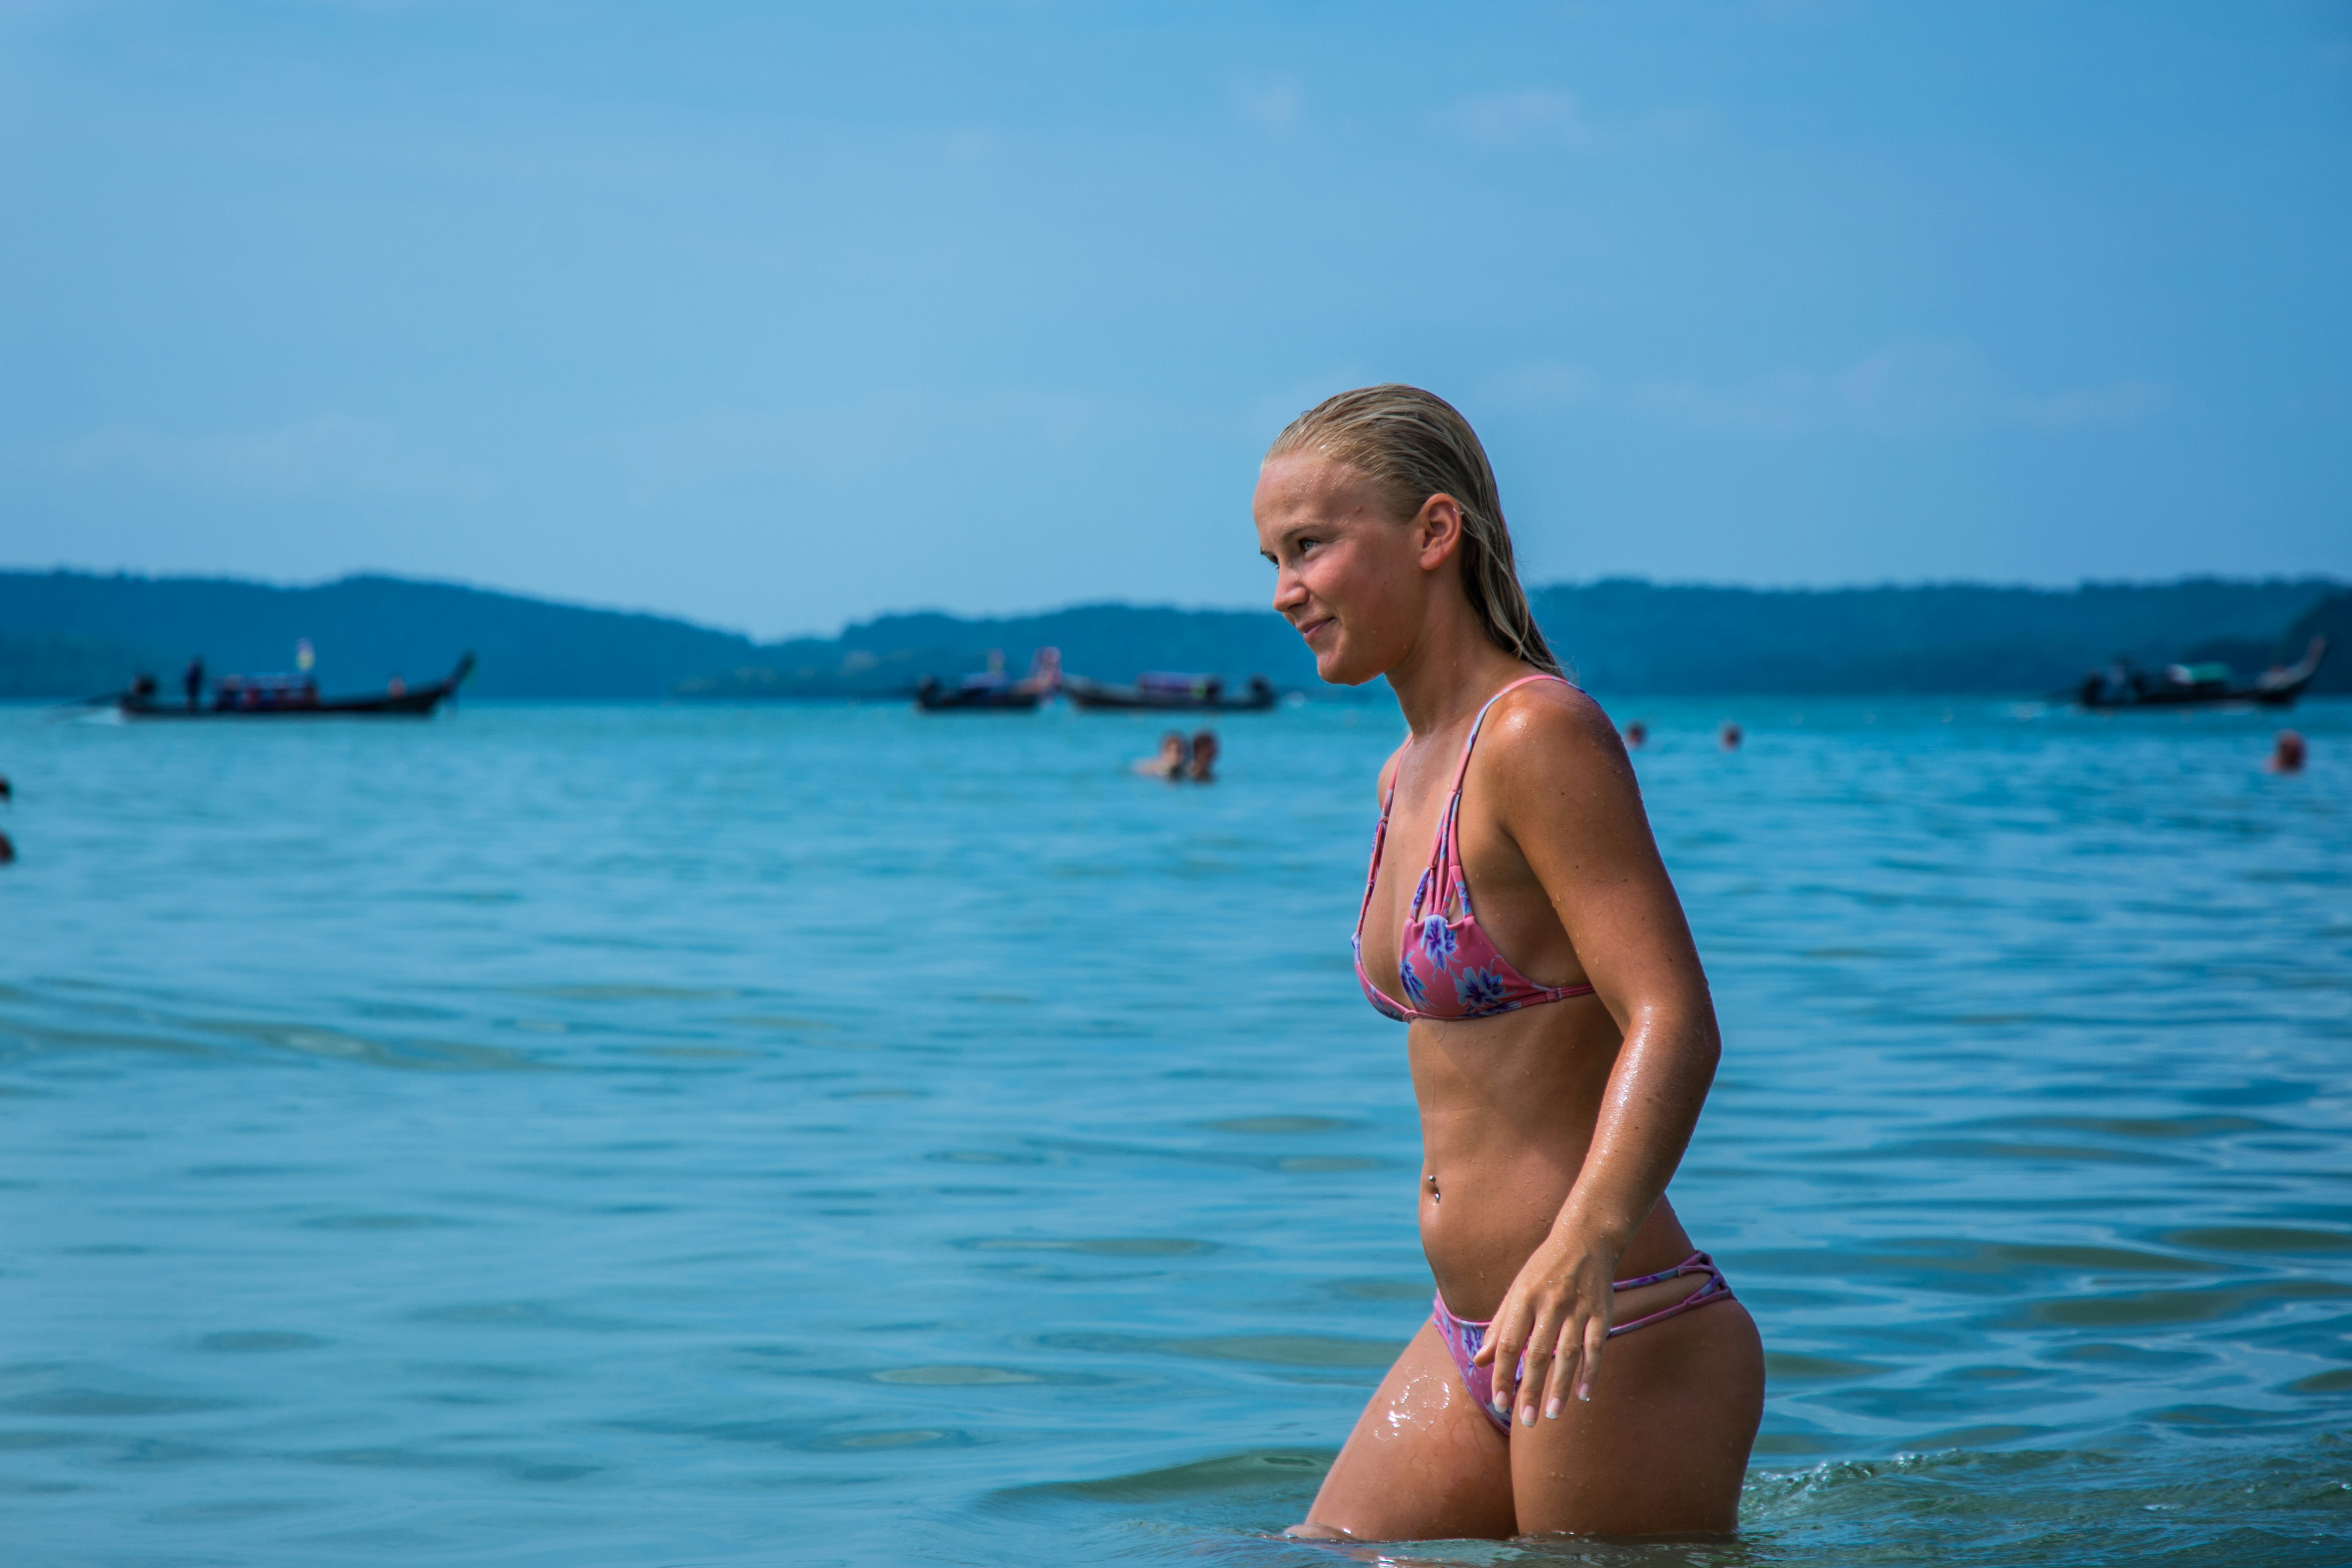 woman in bikini standing in water during daytime